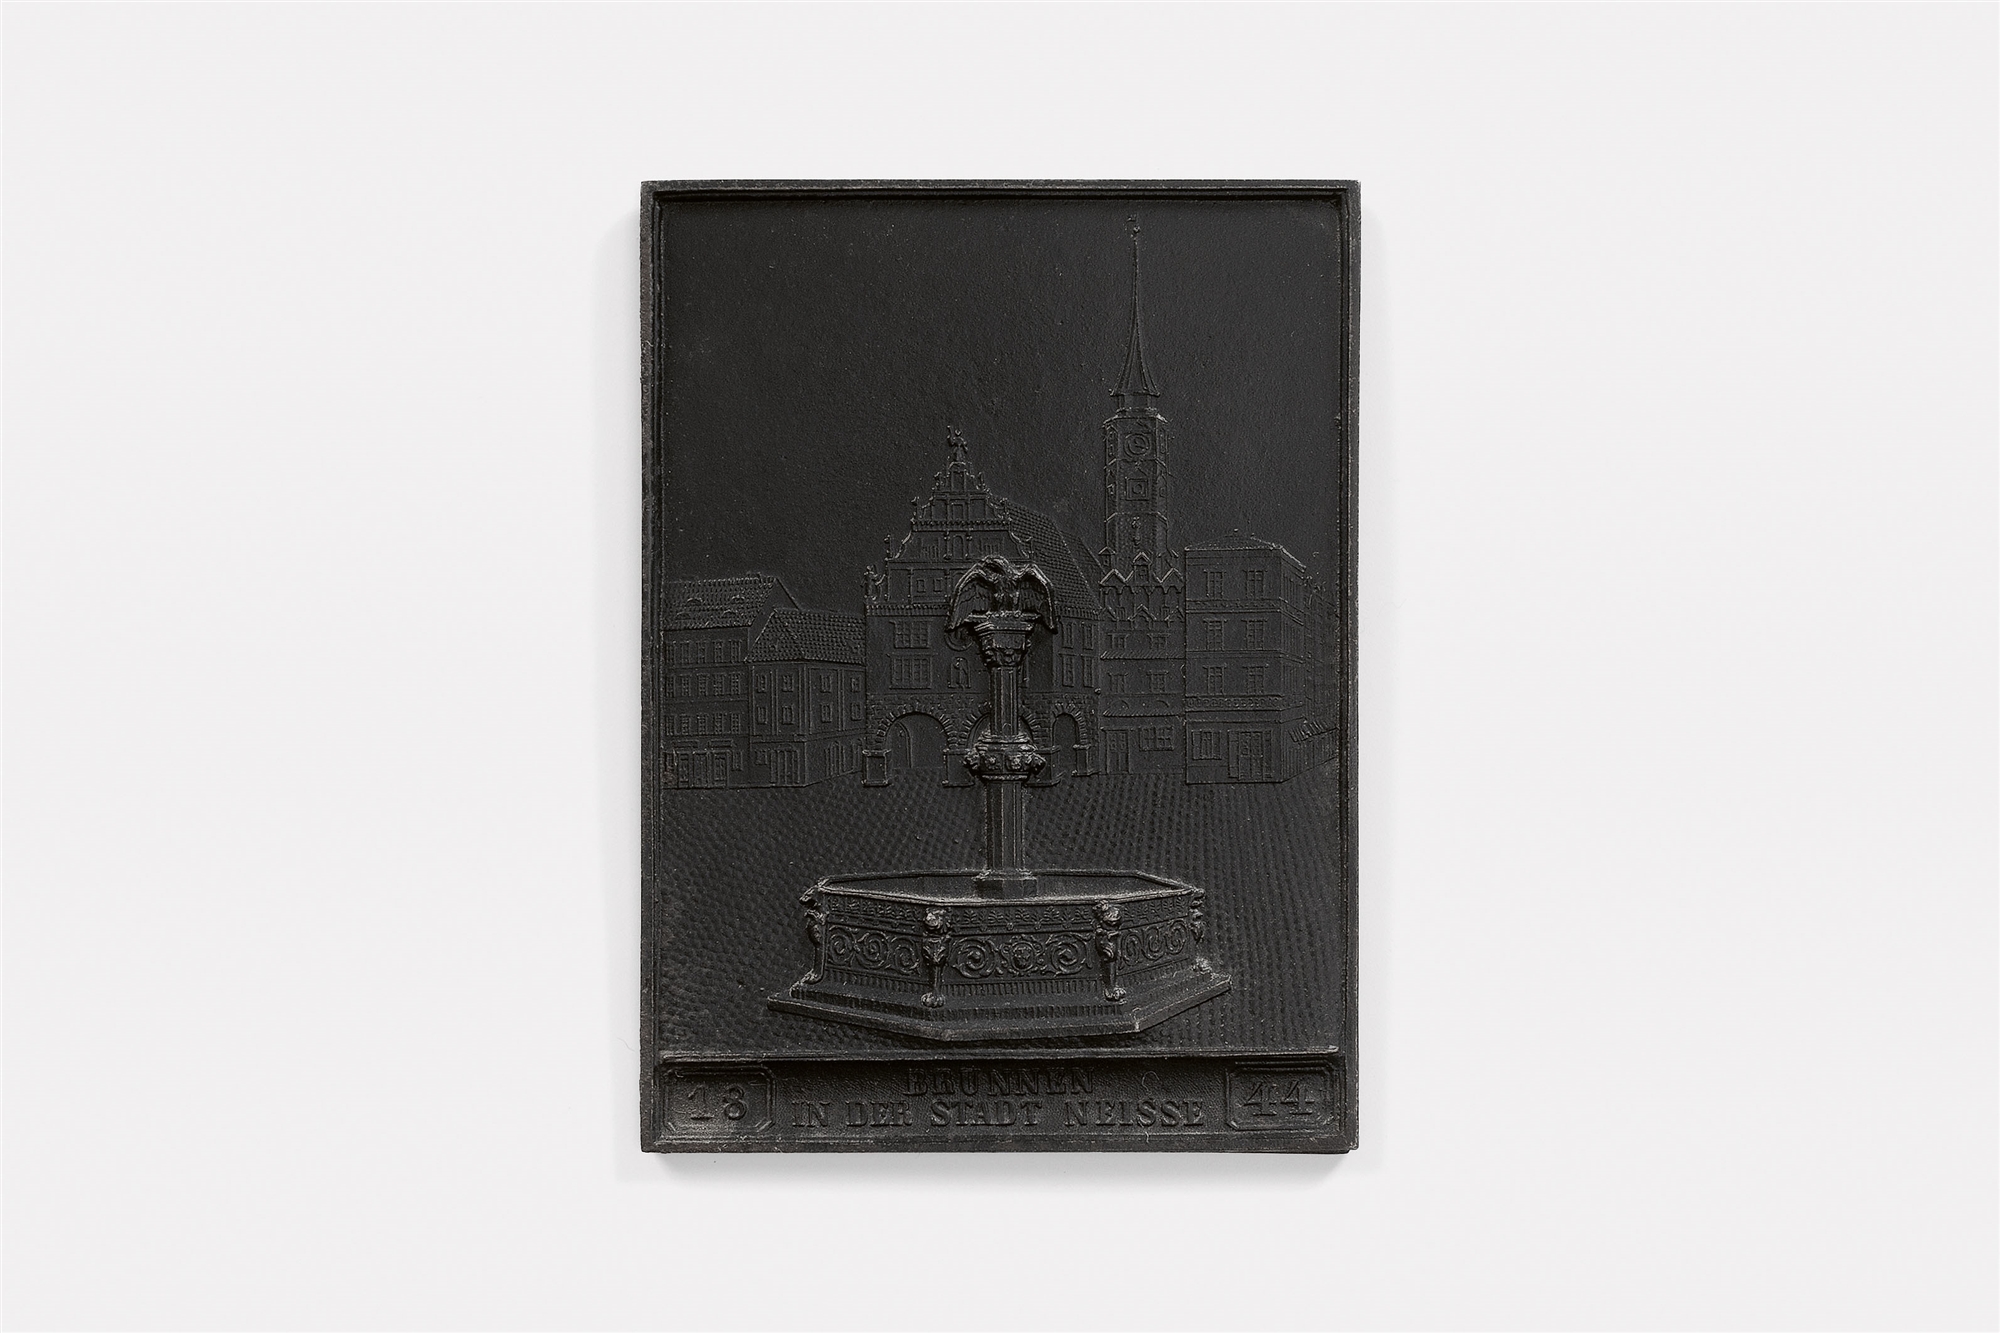 A cast iron New Year's plaque inscribed "1844 BRUNNEN IN DER STADT NEISSE"